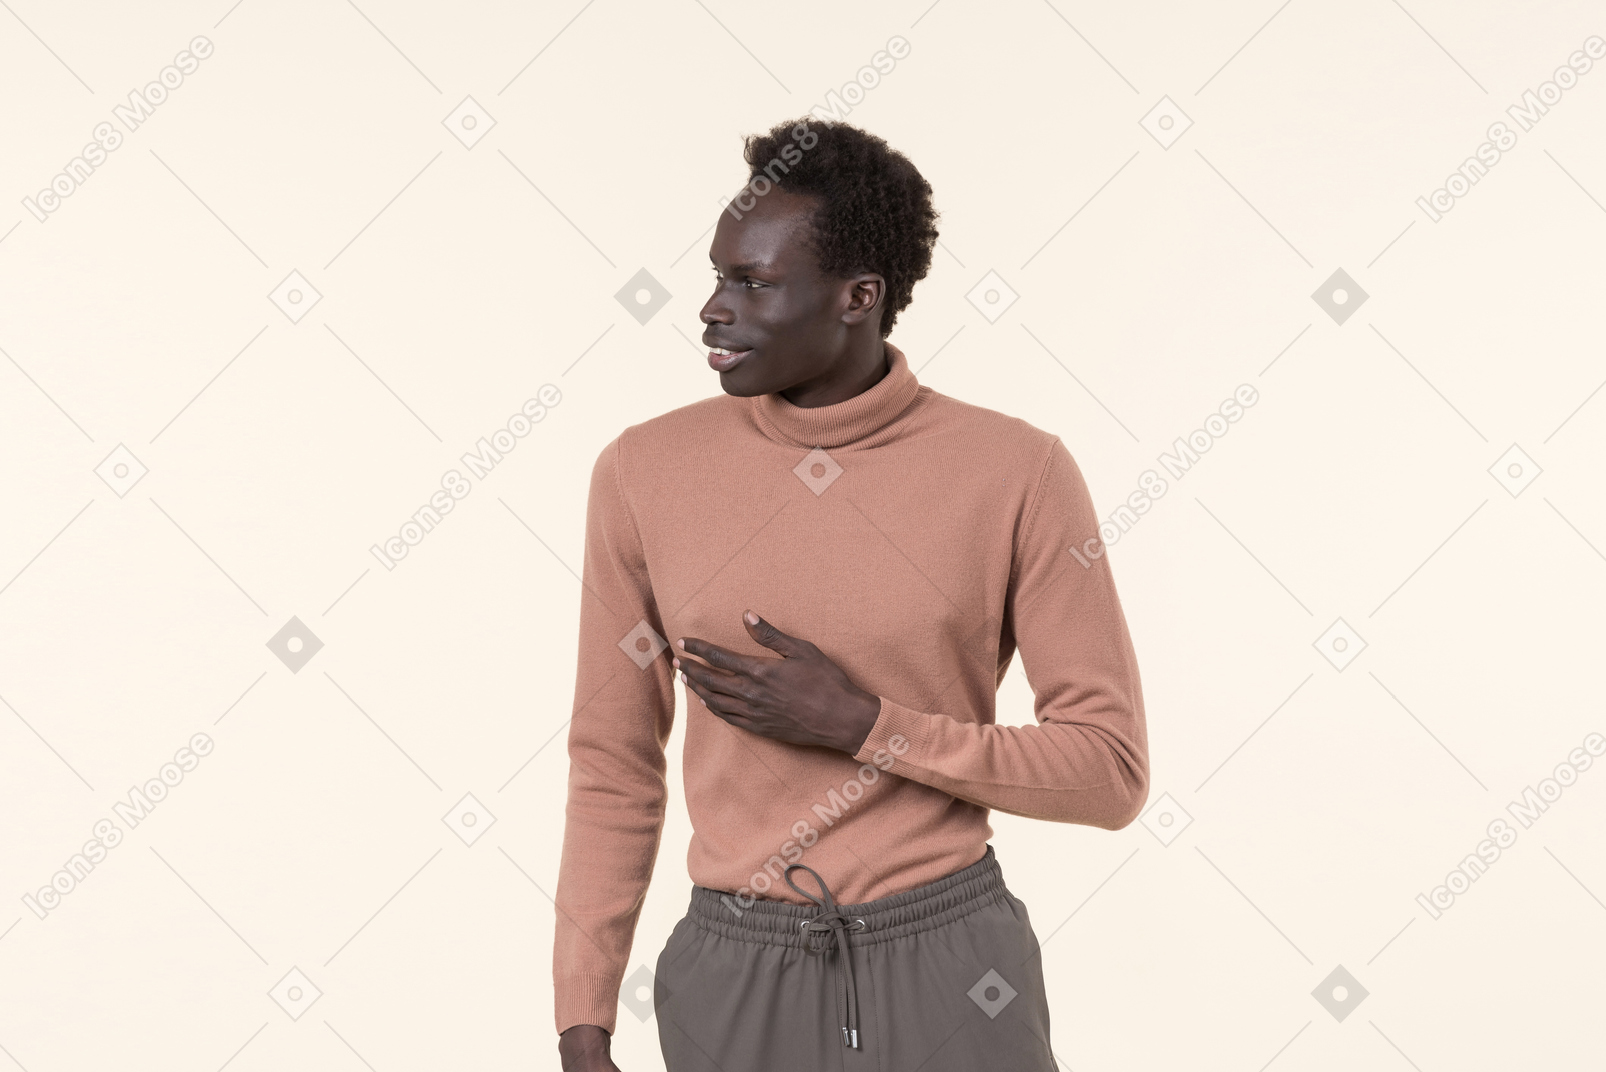 Un giovane uomo di colore con un dolcevita beige e pantaloni della tuta grigi in piedi casualmente sullo sfondo bianco